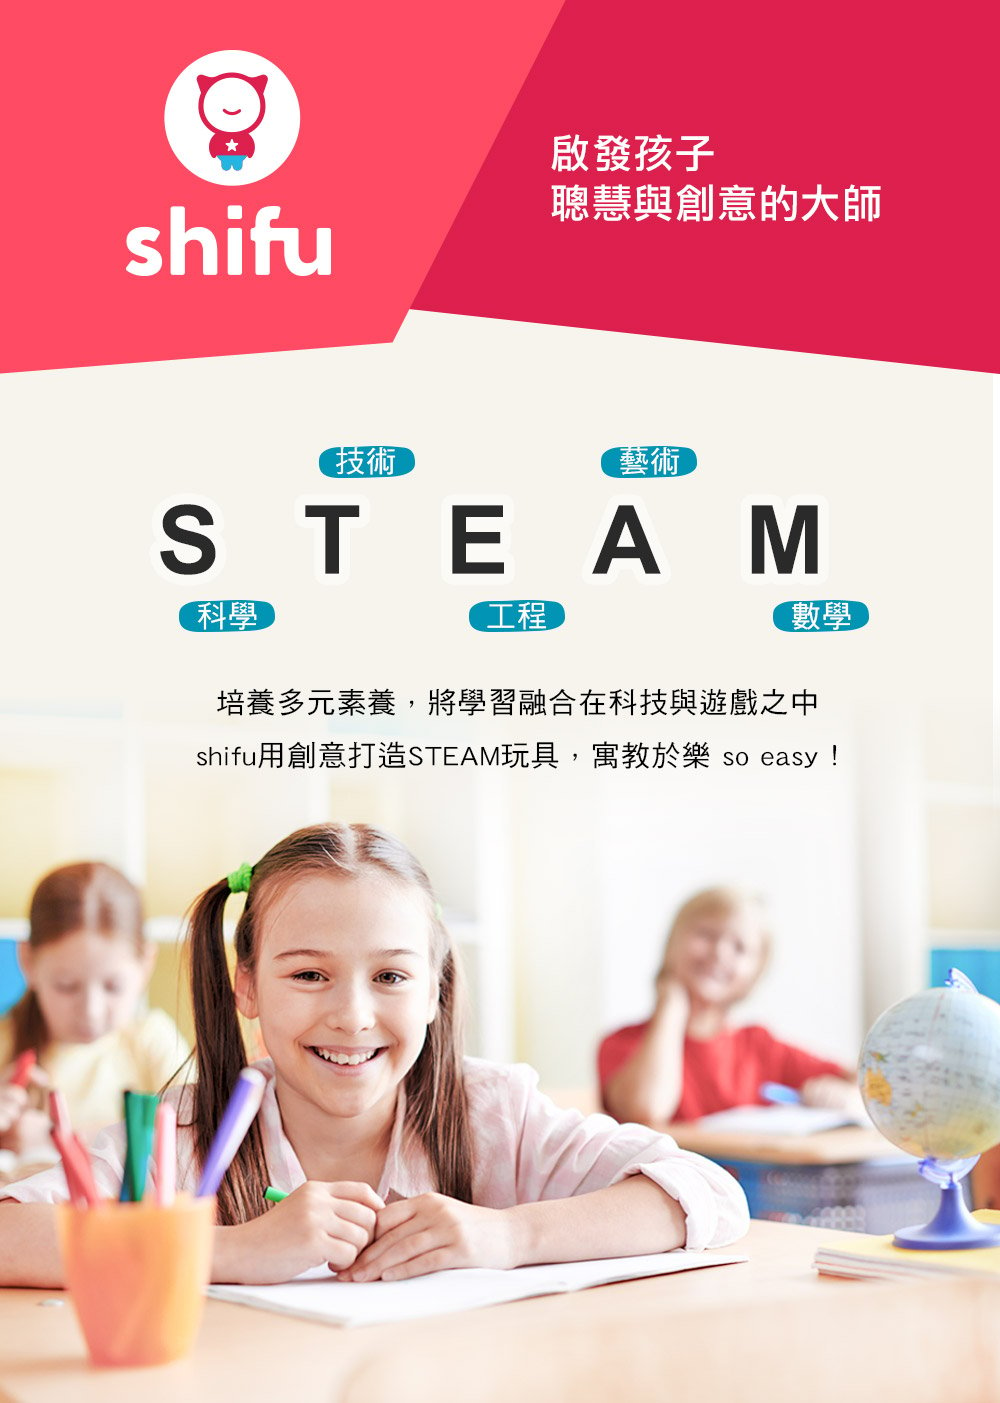 shifu 互動式玩具品牌